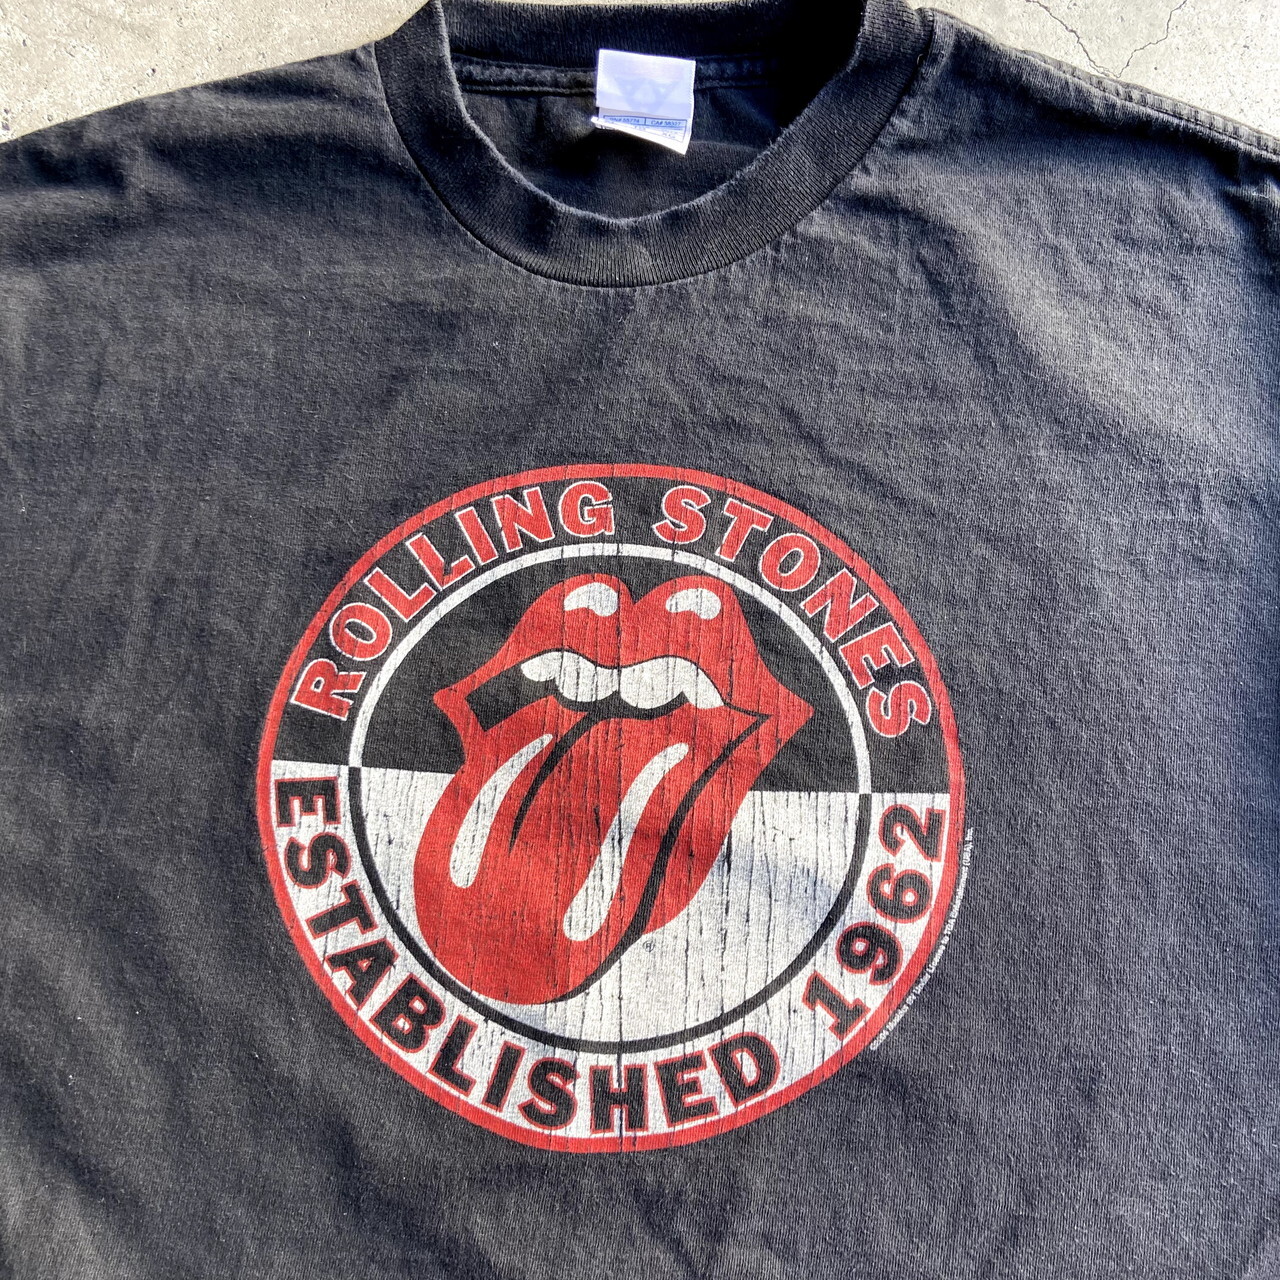 The Rolling Stones ローリングストーンズ ロゴプリント ロゴtシャツ バンドtシャツ メンズxl 古着 黒 ブラック Tシャツ Cave 古着屋 公式 古着通販サイト